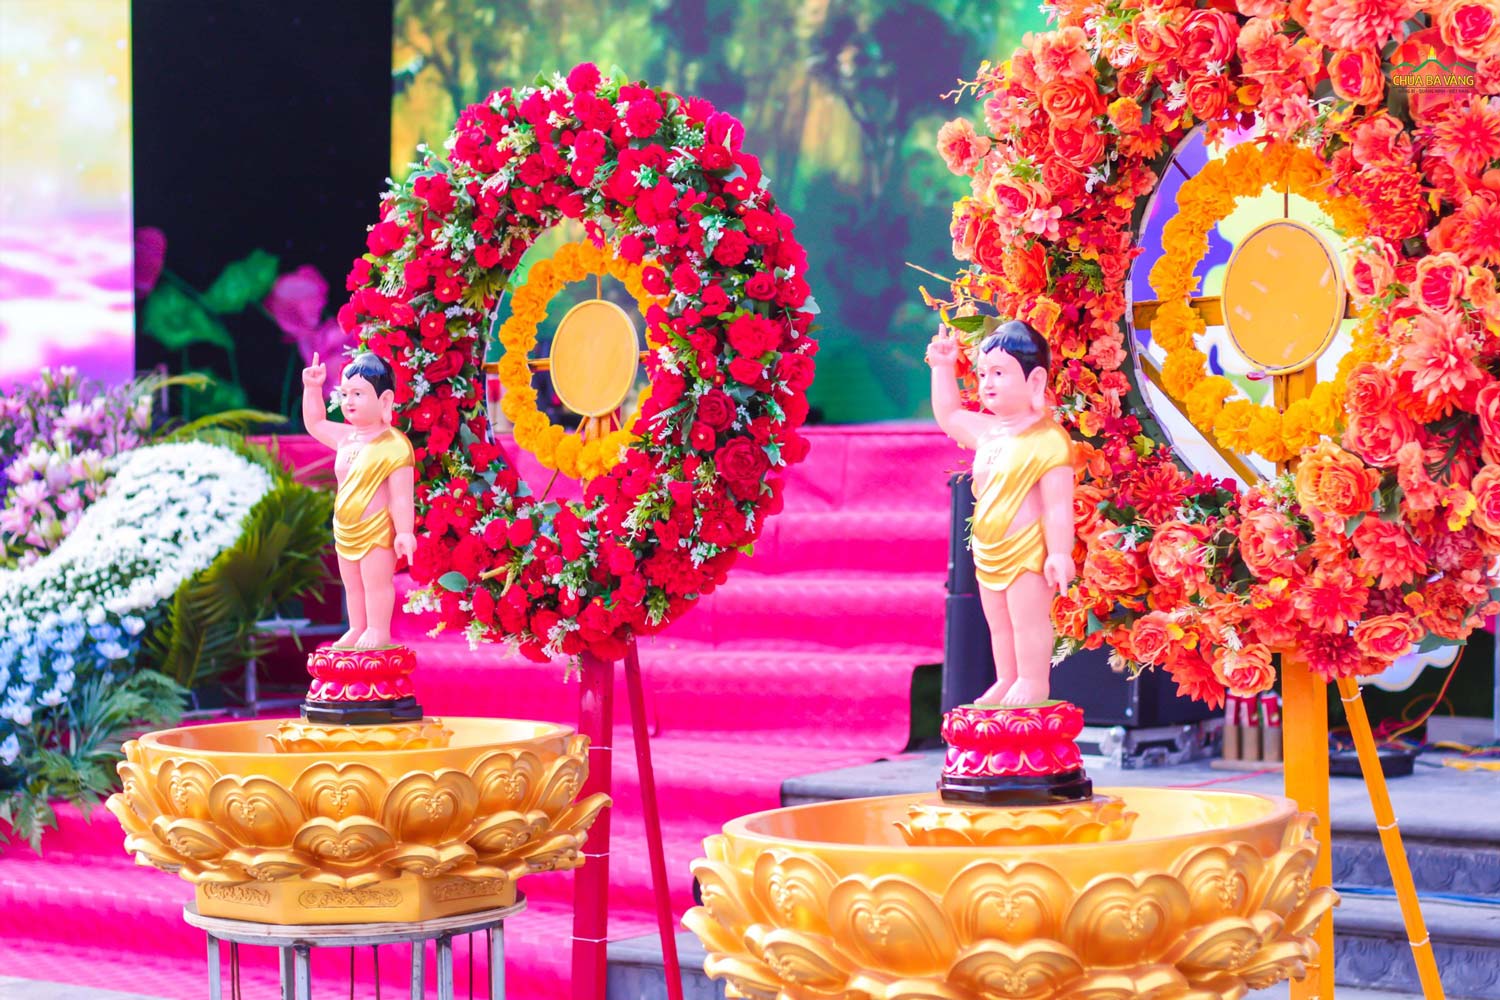 Muôn hoa lung linh khoe sắc tôn lên không khí thành kính kỷ niệm ngày Đức Phật đản sinh